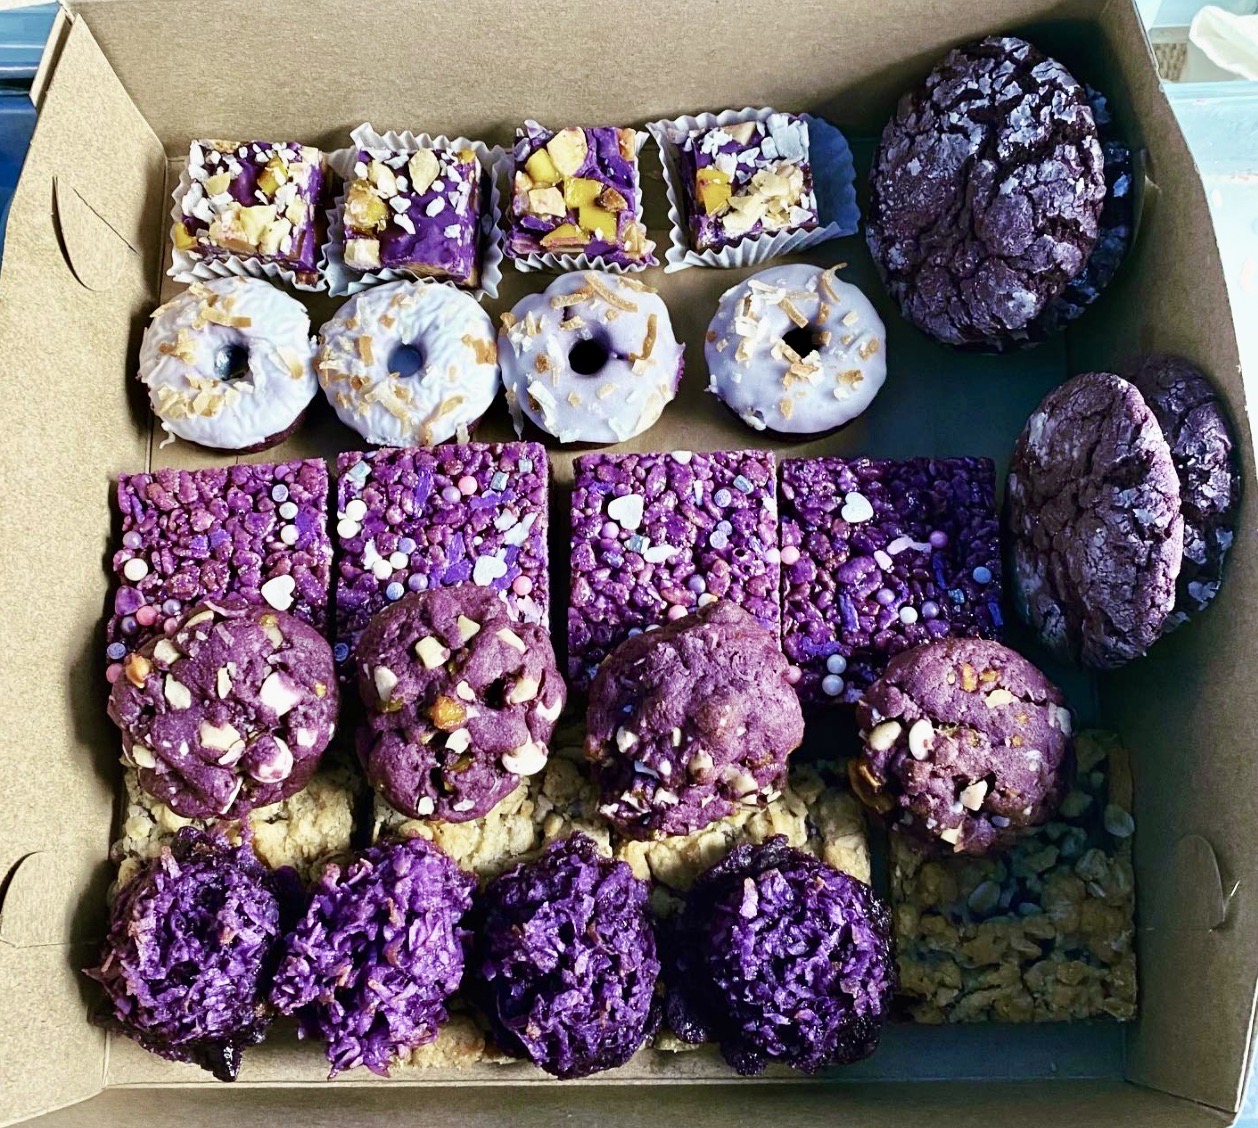 A box of purple ube baked treats from Buko Bakes